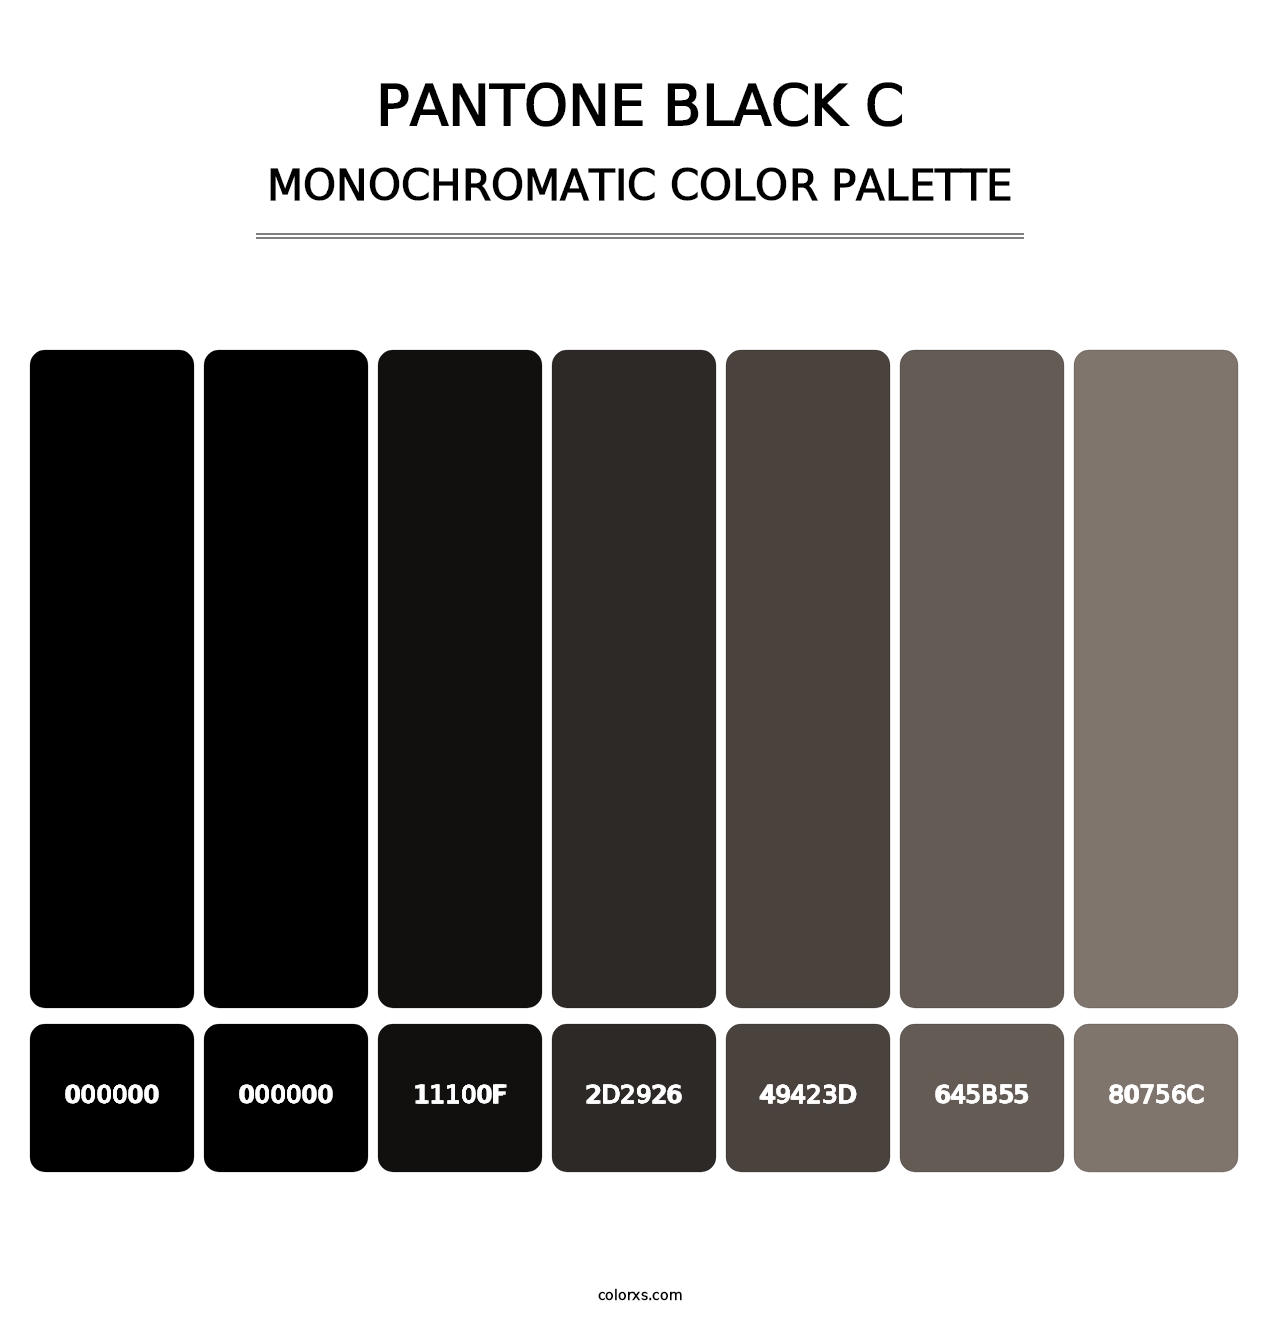 PANTONE Black C - Monochromatic Color Palette